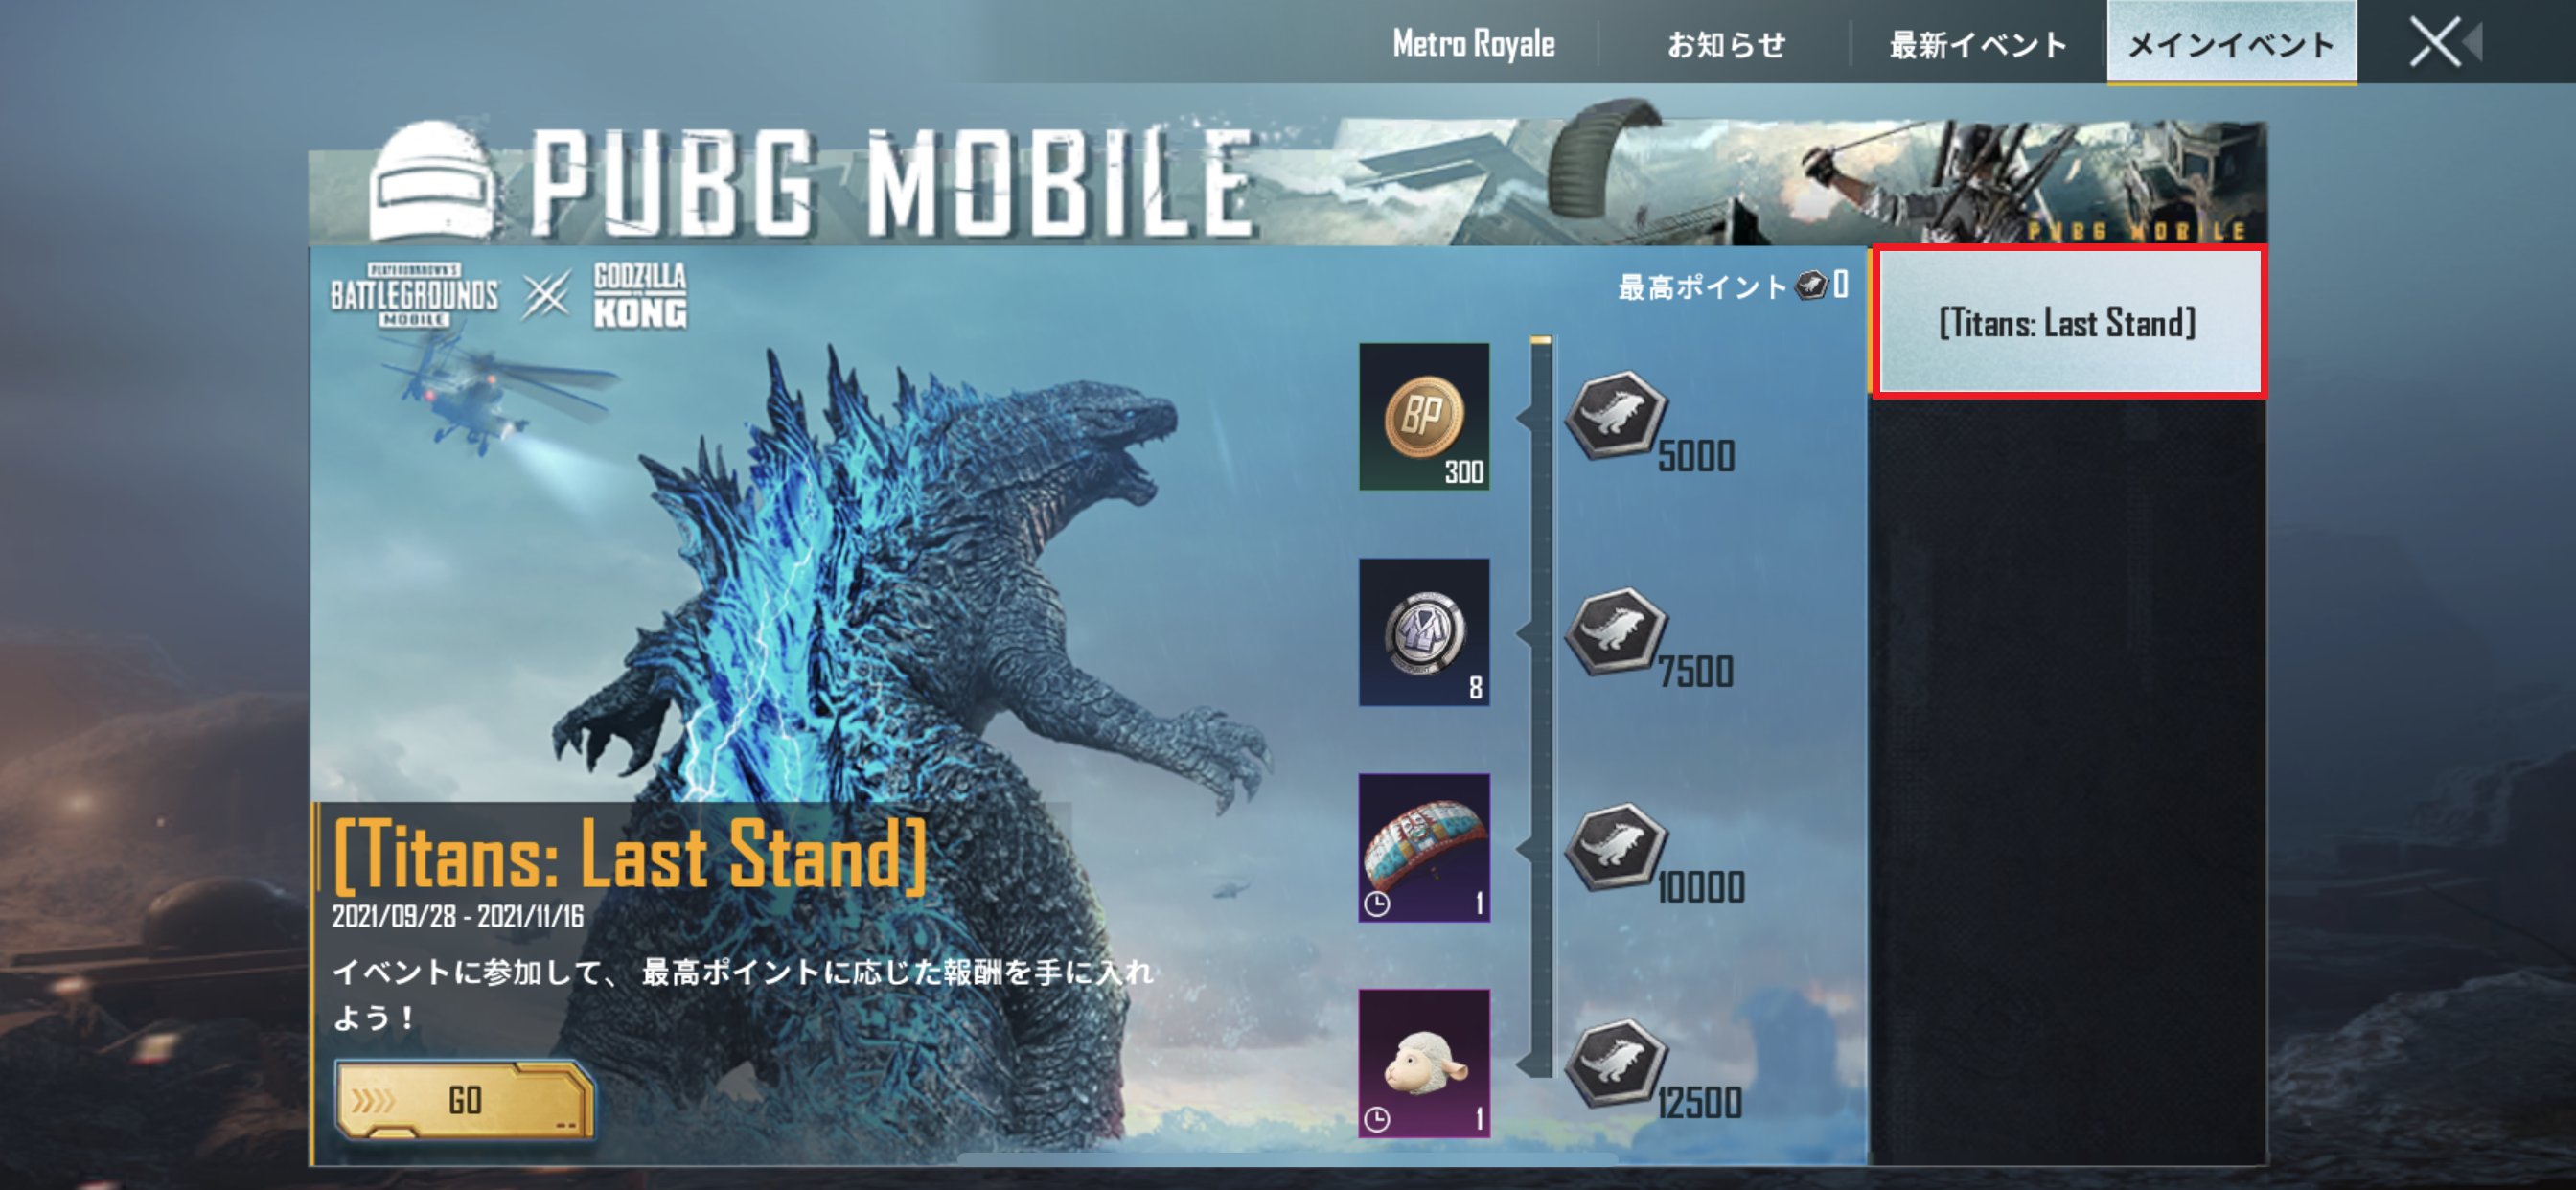 Pubg Mobile Japan お知らせ1 2 本日9 28 火 よりeventモード Titans Last Stand において 本モードがプレイできない問題を確認しておりました 当該問題は 同日の23 30頃に修正対応を行っております アプリの再起動を行い パッチの適用をお願い